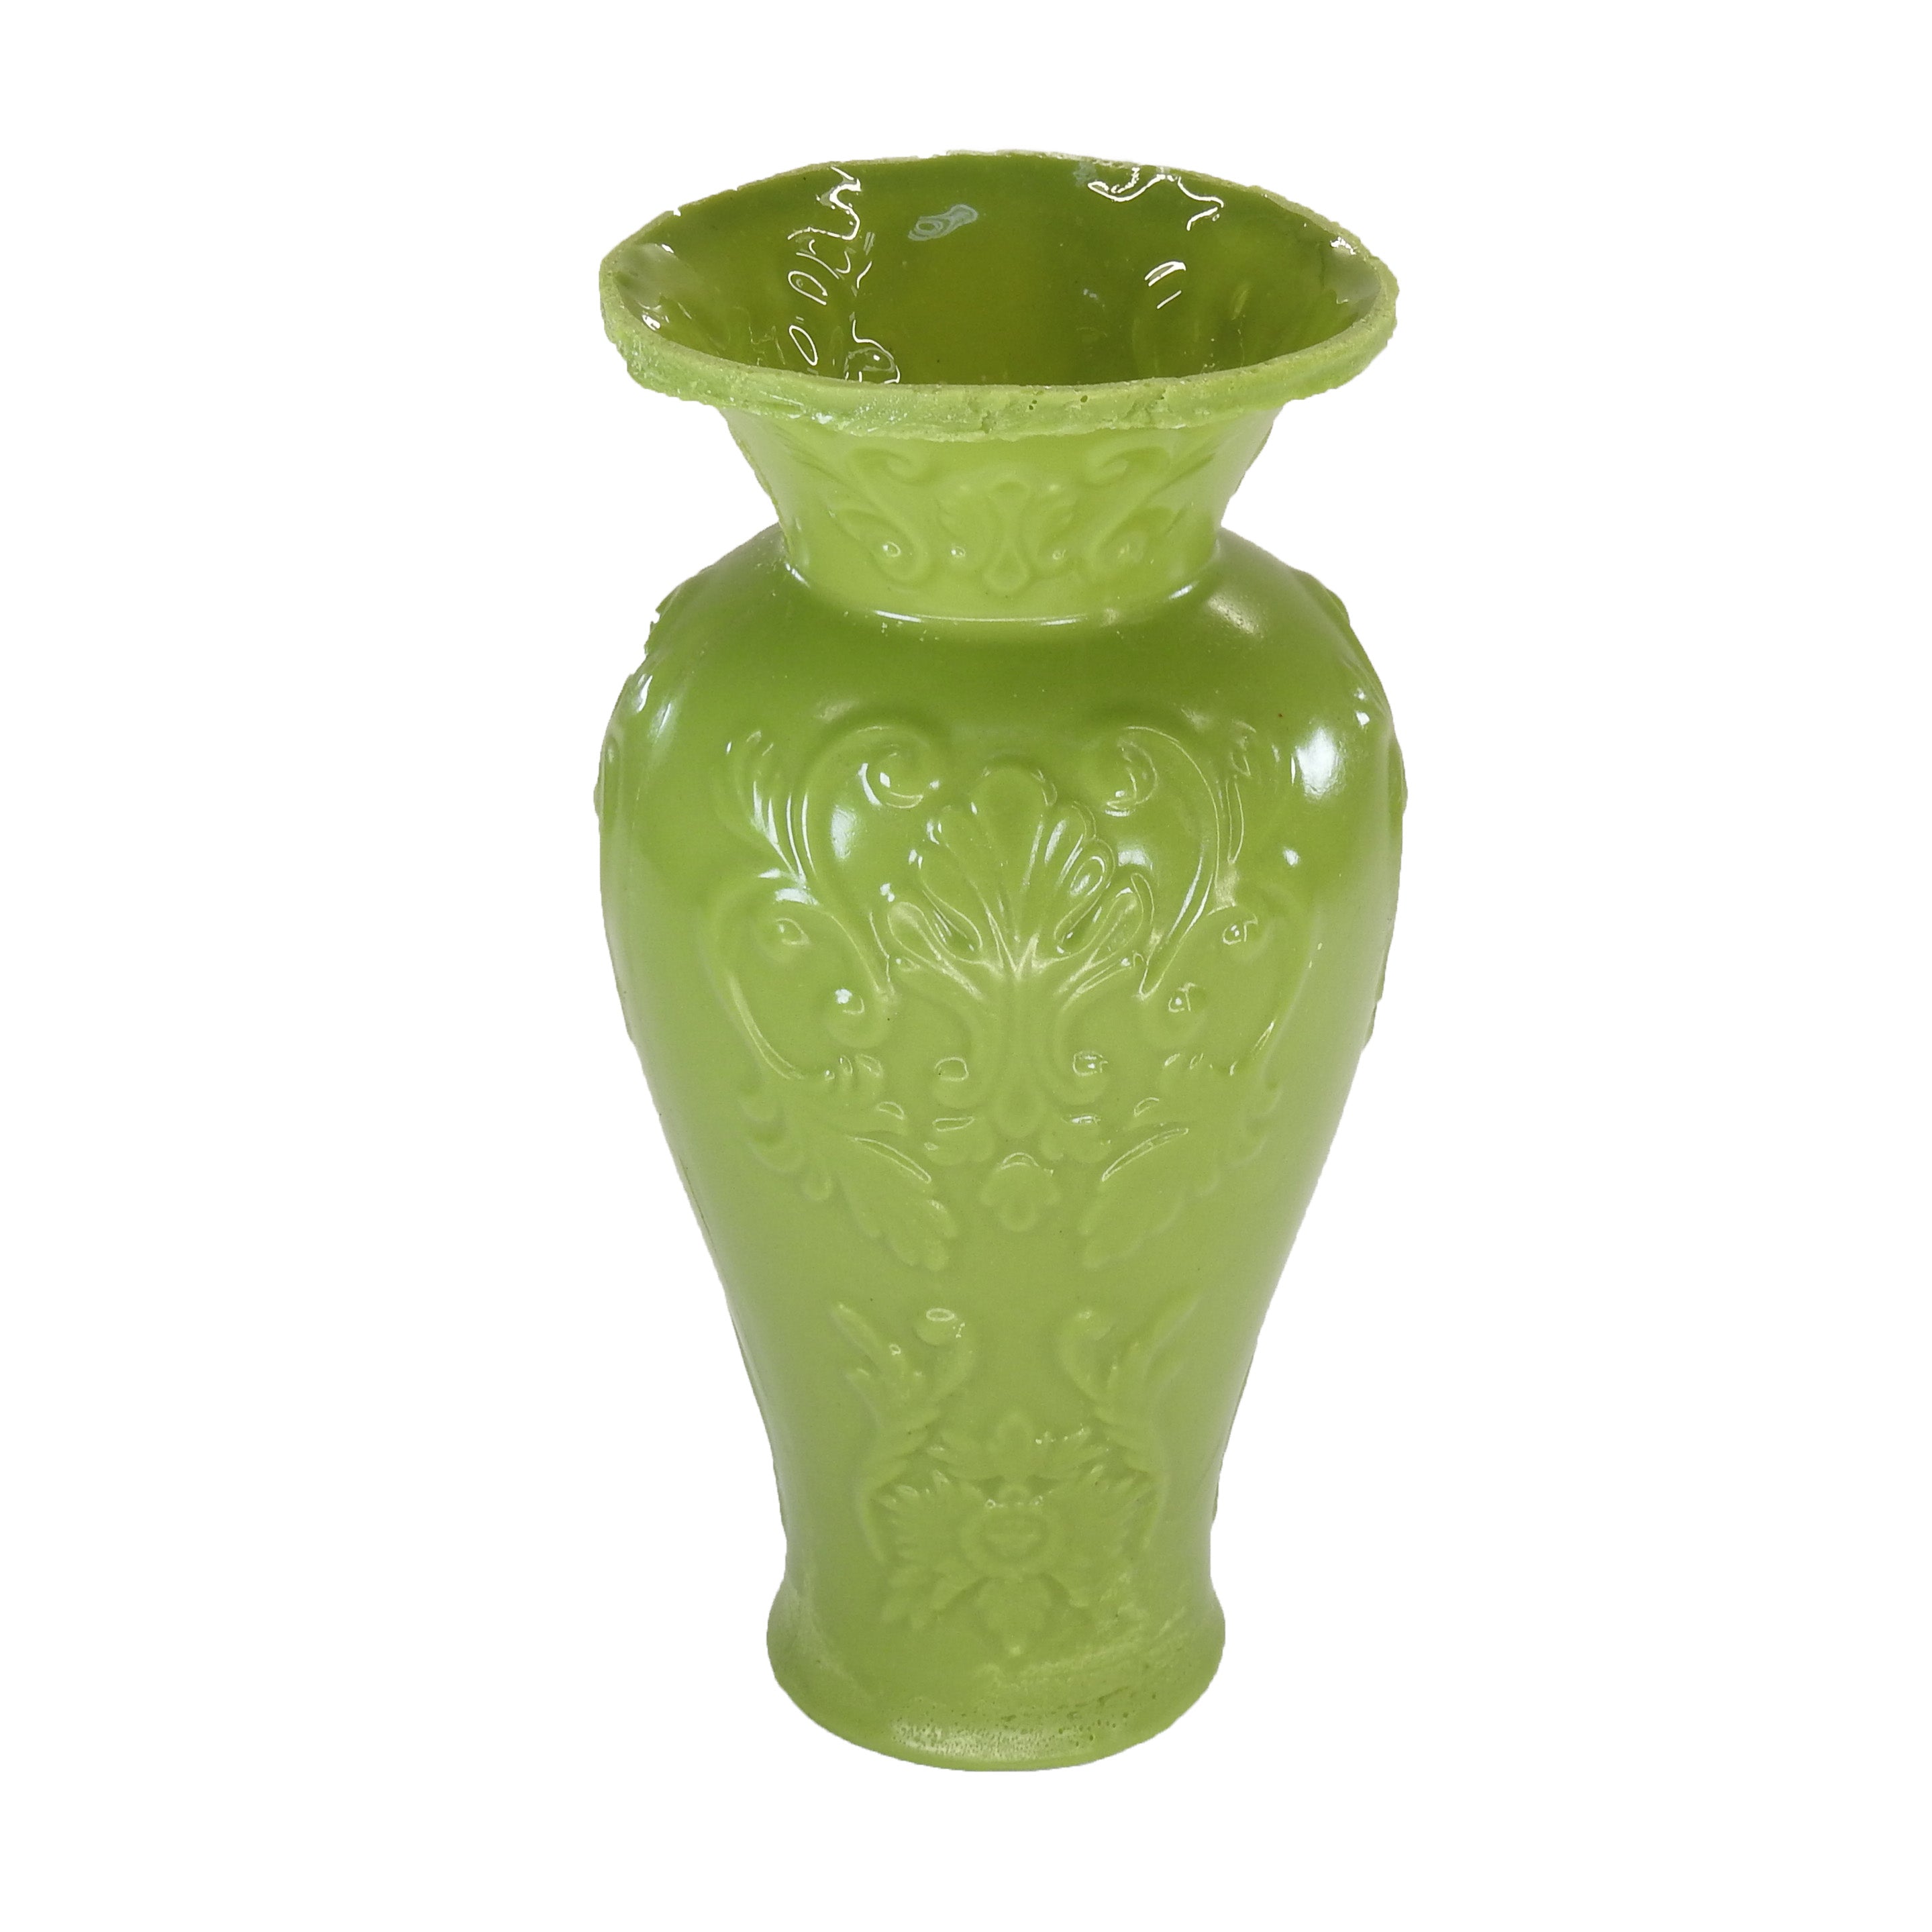 SMASHProps Breakaway Large Georgian Vase 7.5 Inch - LIGHT GREEN opaque - Light Green Opaque